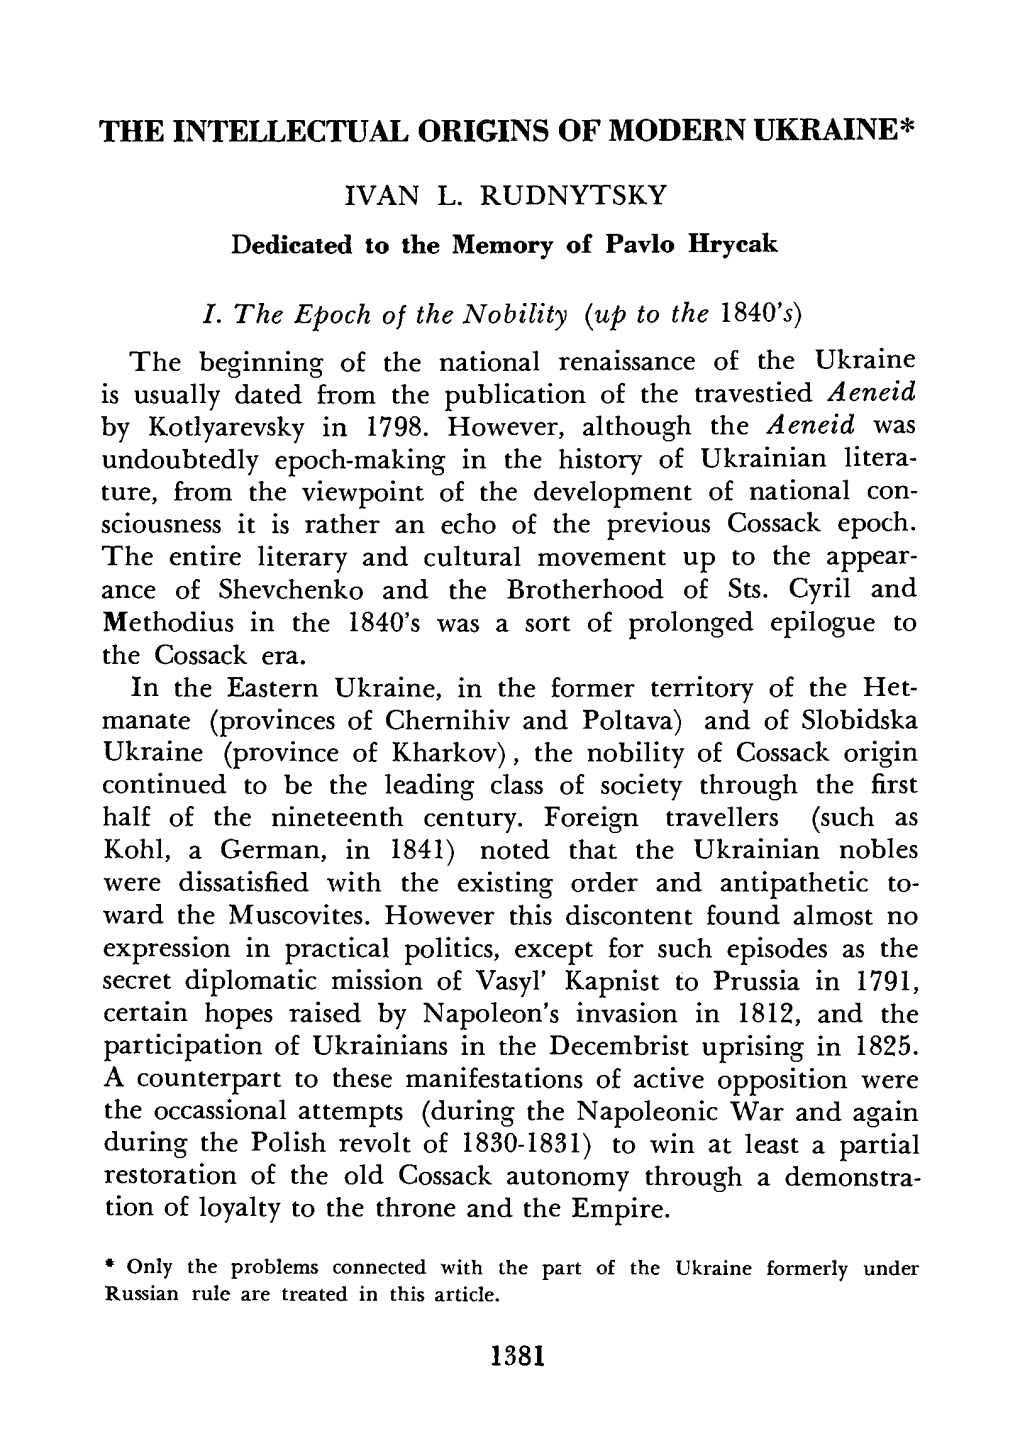 The Annals of UVAN, Vol. VI, 1958, No. 3-4 (21-22)